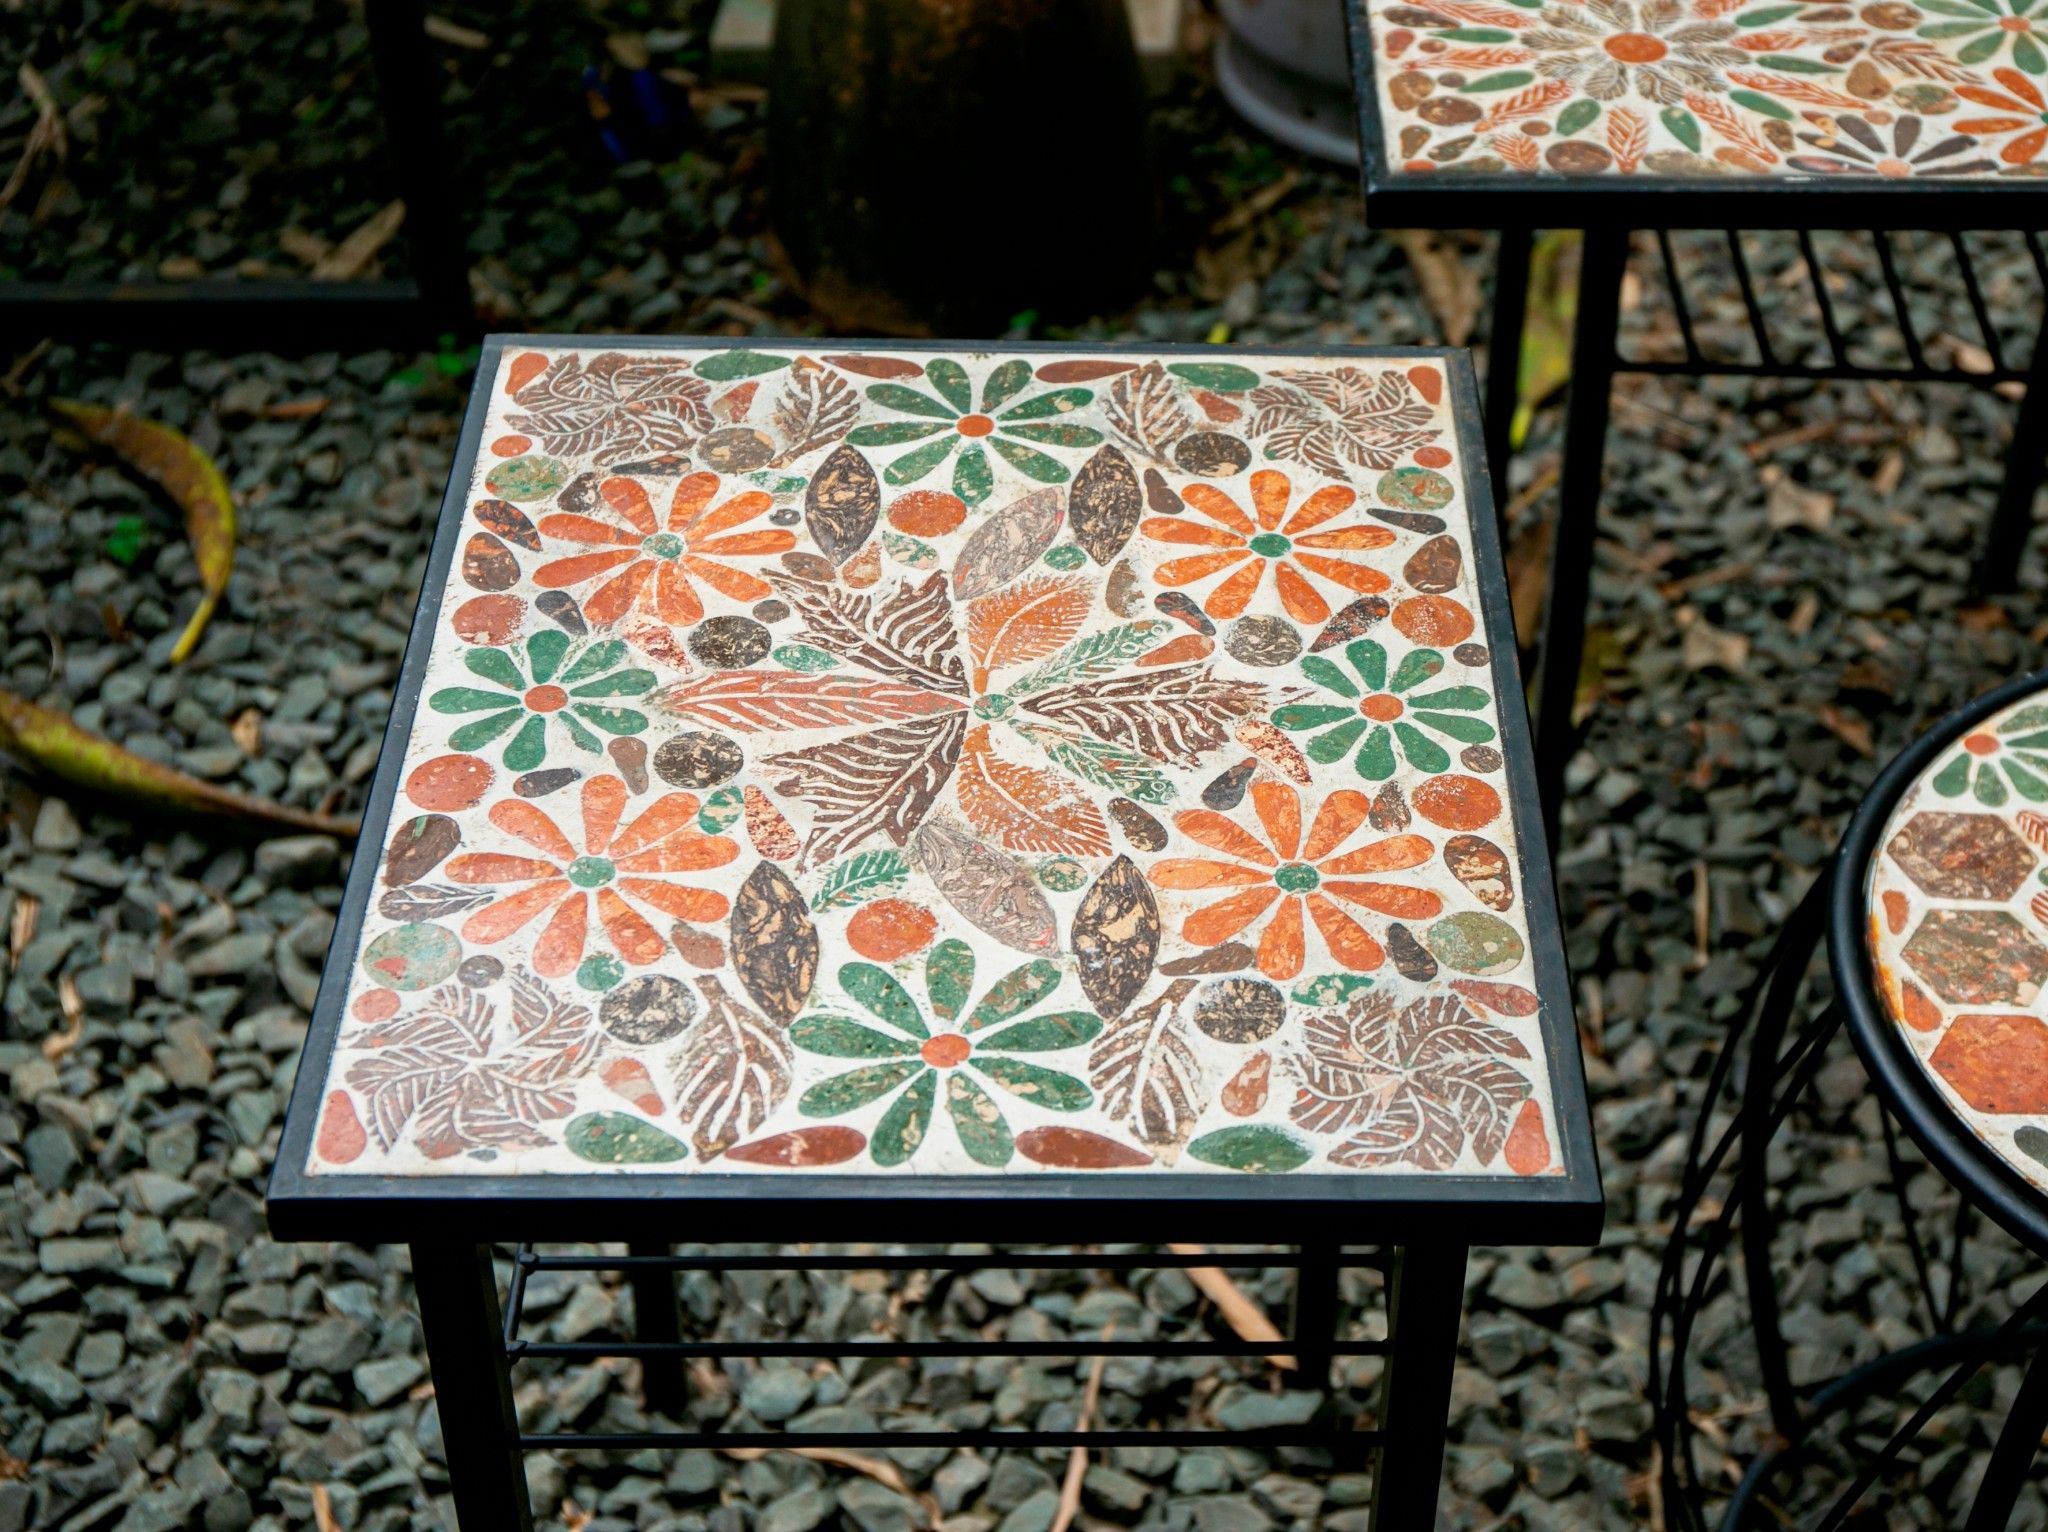  Mosaic cổ điển, đôn gốm vuông, D44xR38xH58 cm 